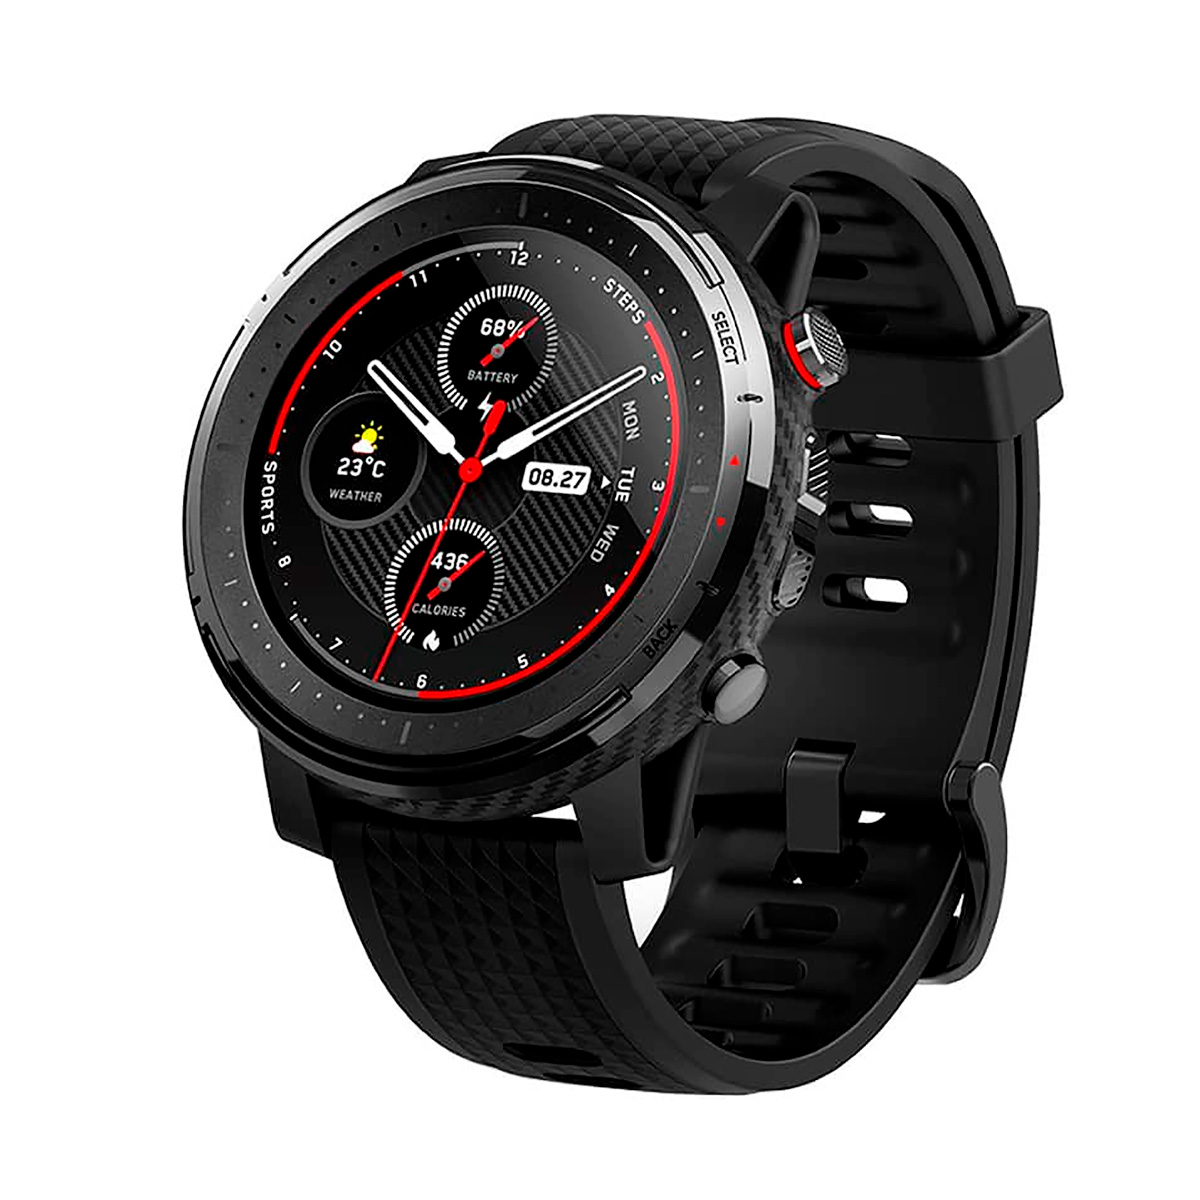 Xiaomi Amazfit Stratos, un bonito smartwatch deportivo por 5 dólares